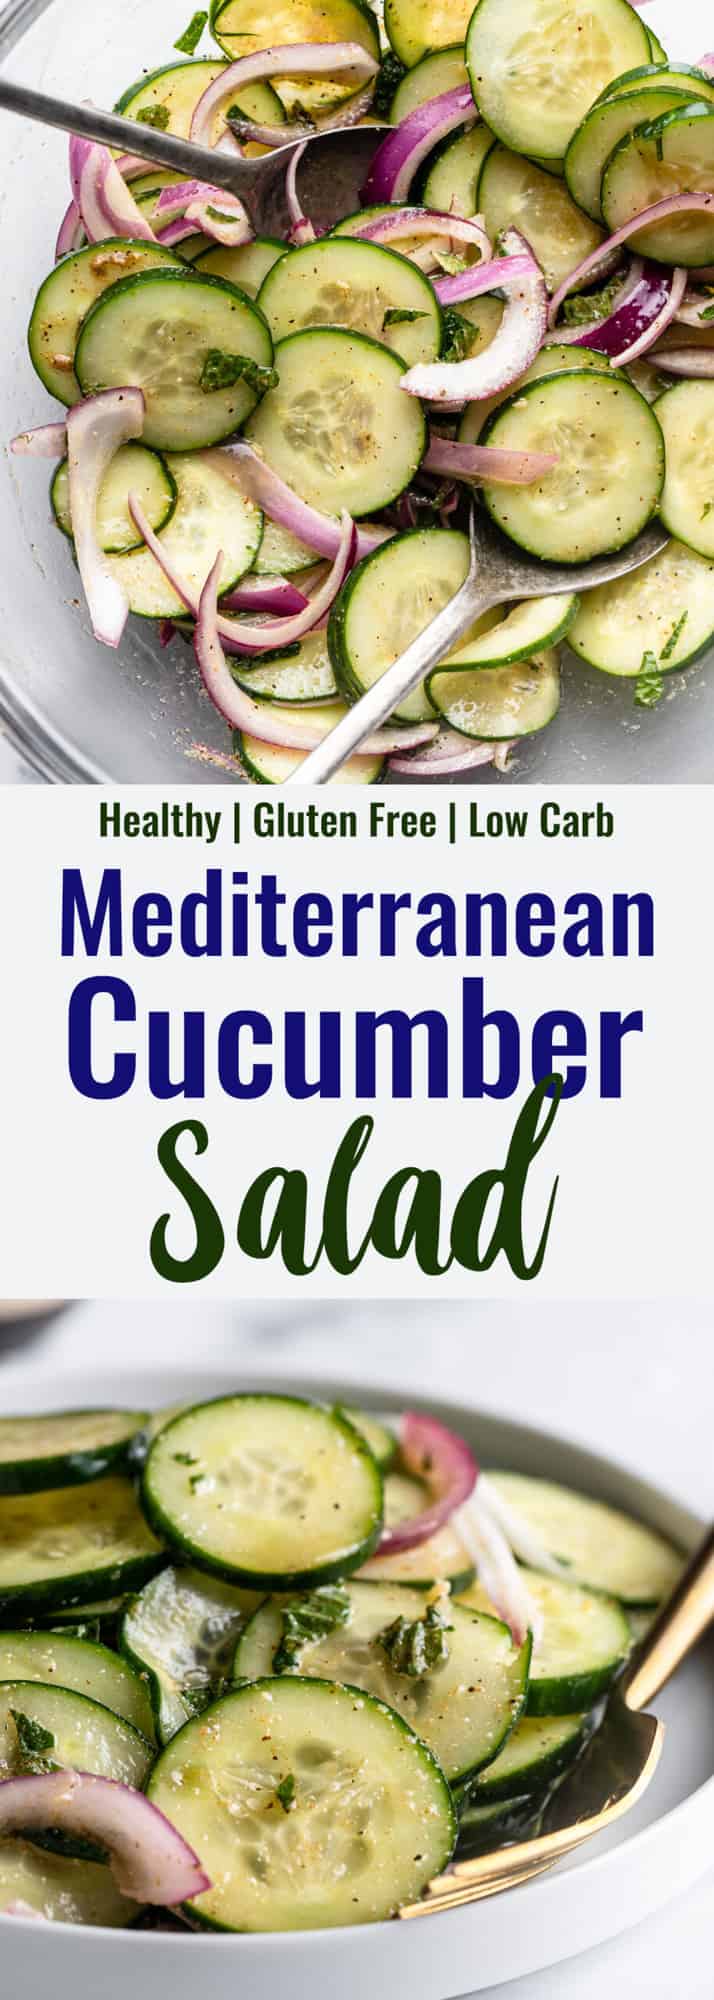 Mediterranean Cucumber Salad photo collage